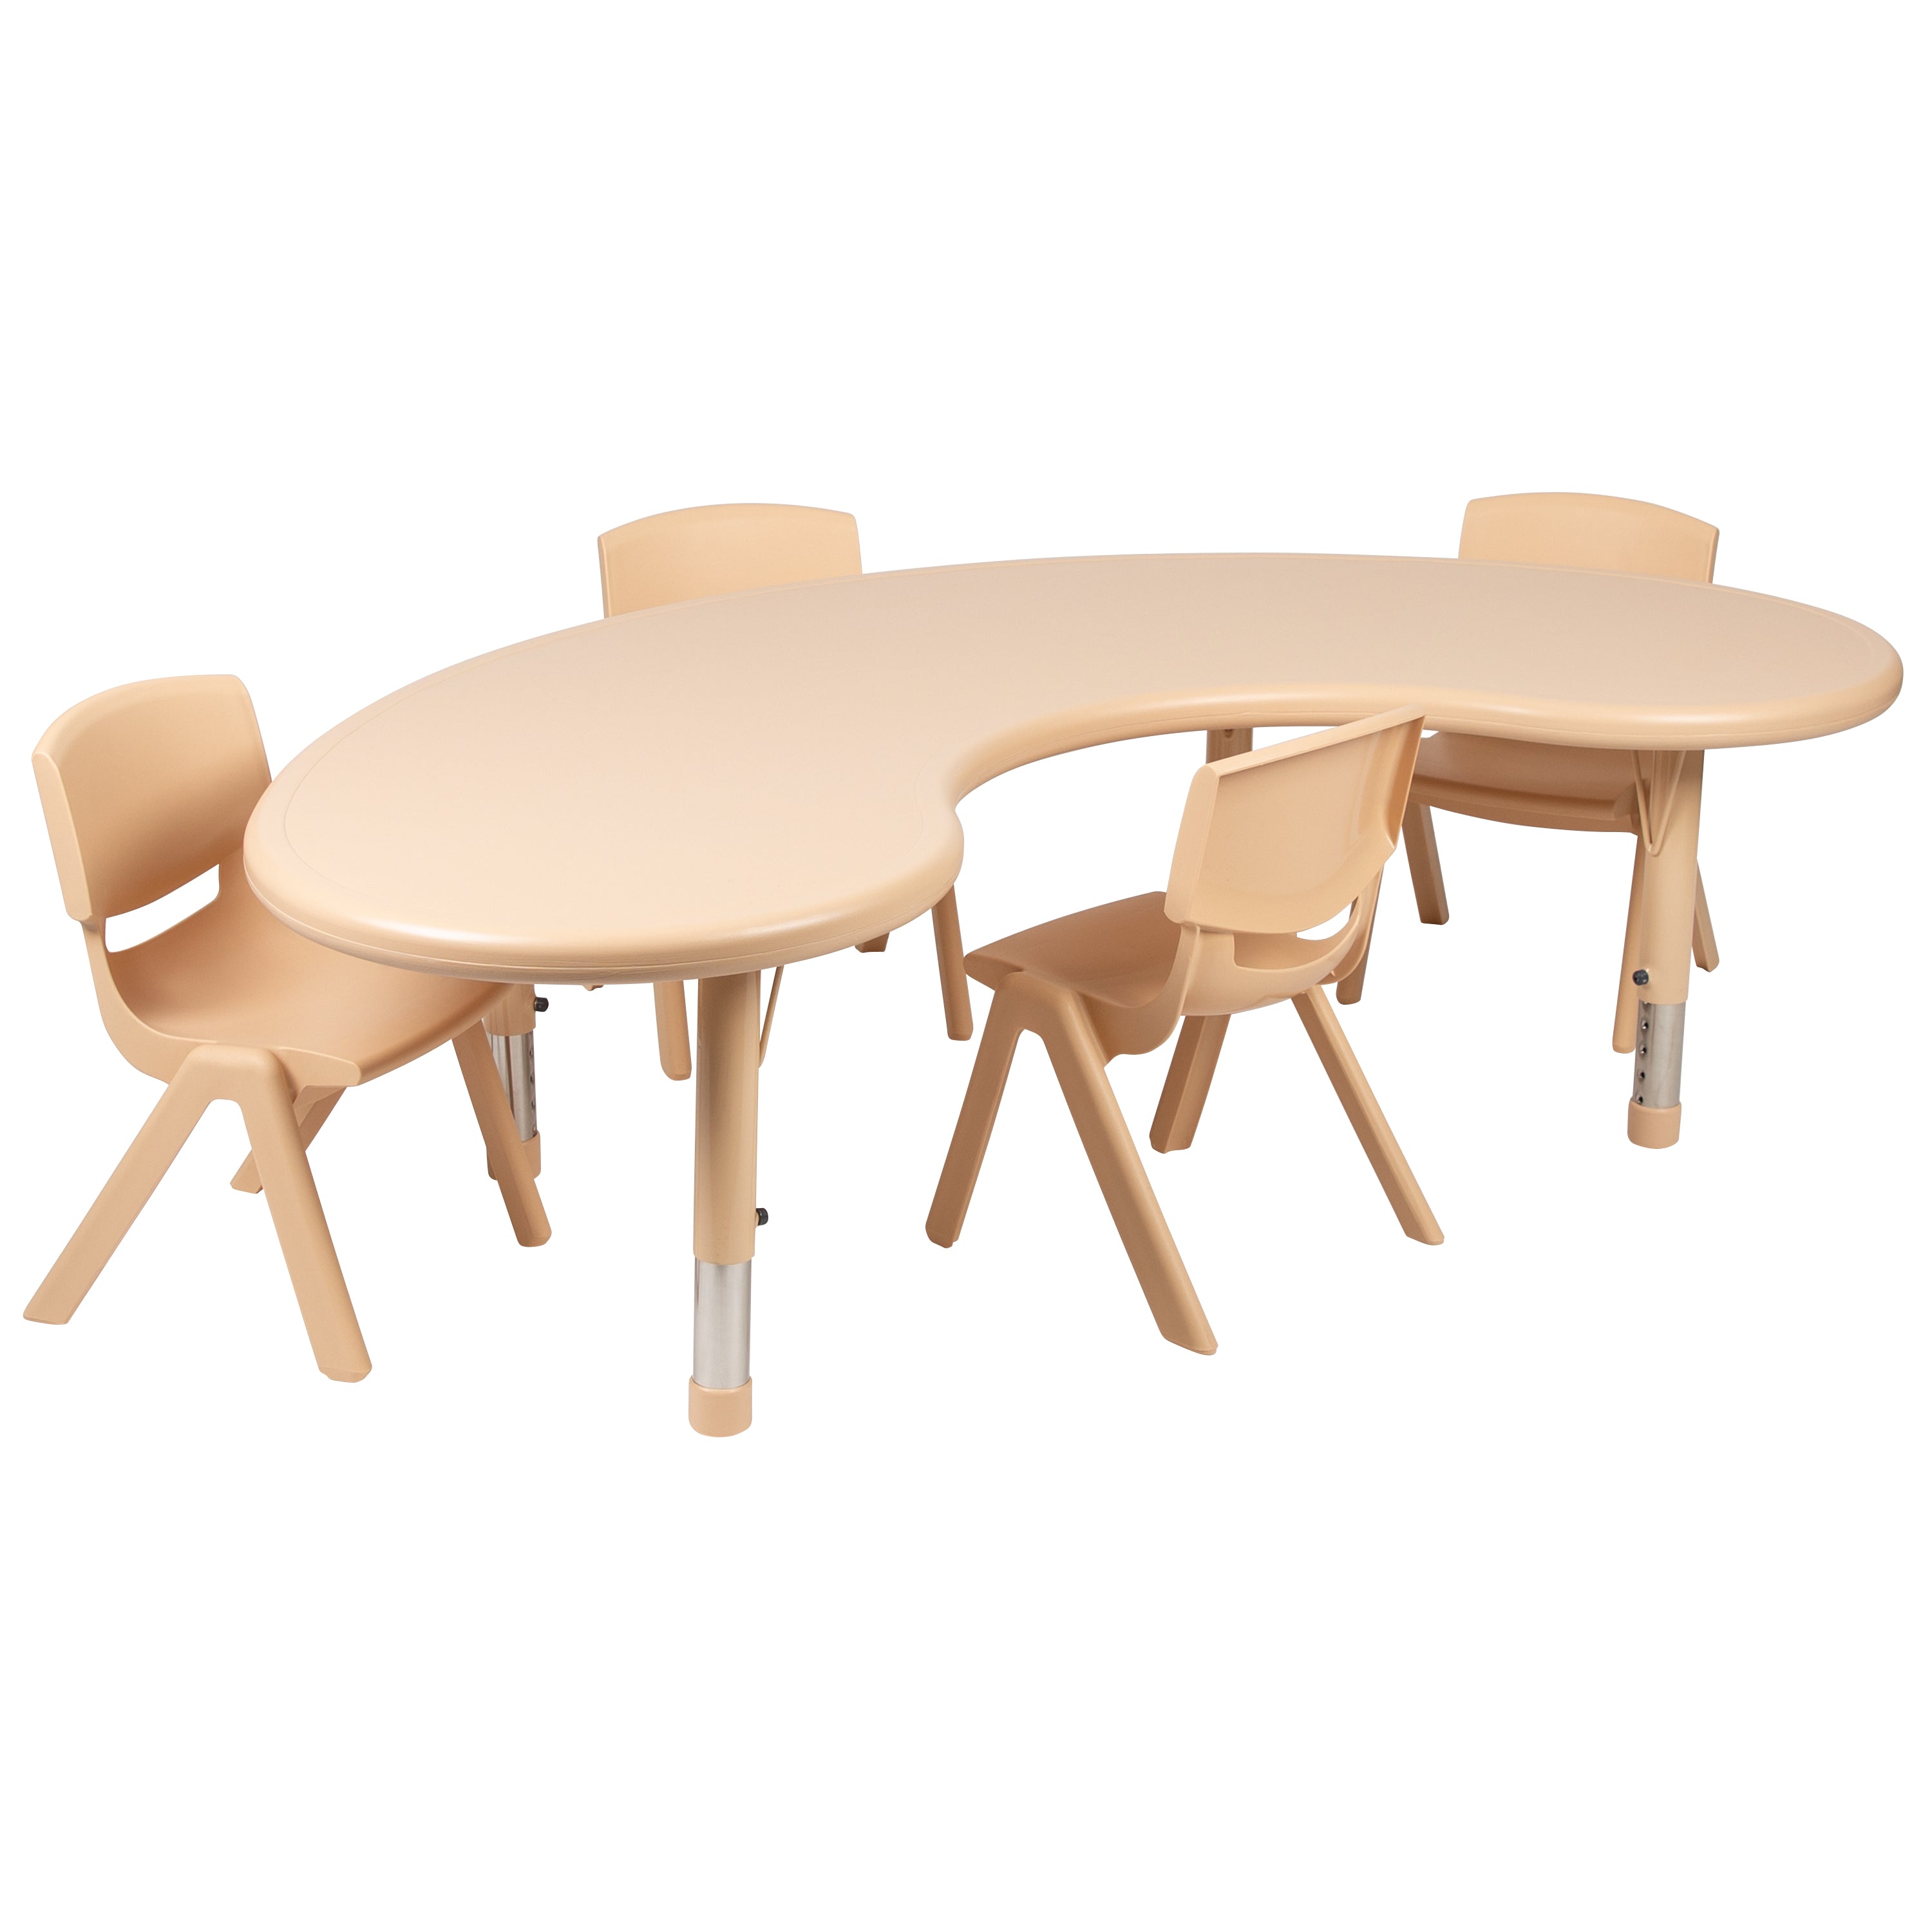 35"W x 65"L Half-Moon Plastic Height Adjustable Activity Table Set with 4 Chairs-Half-Moon Activity Table Set-Flash Furniture-Wall2Wall Furnishings